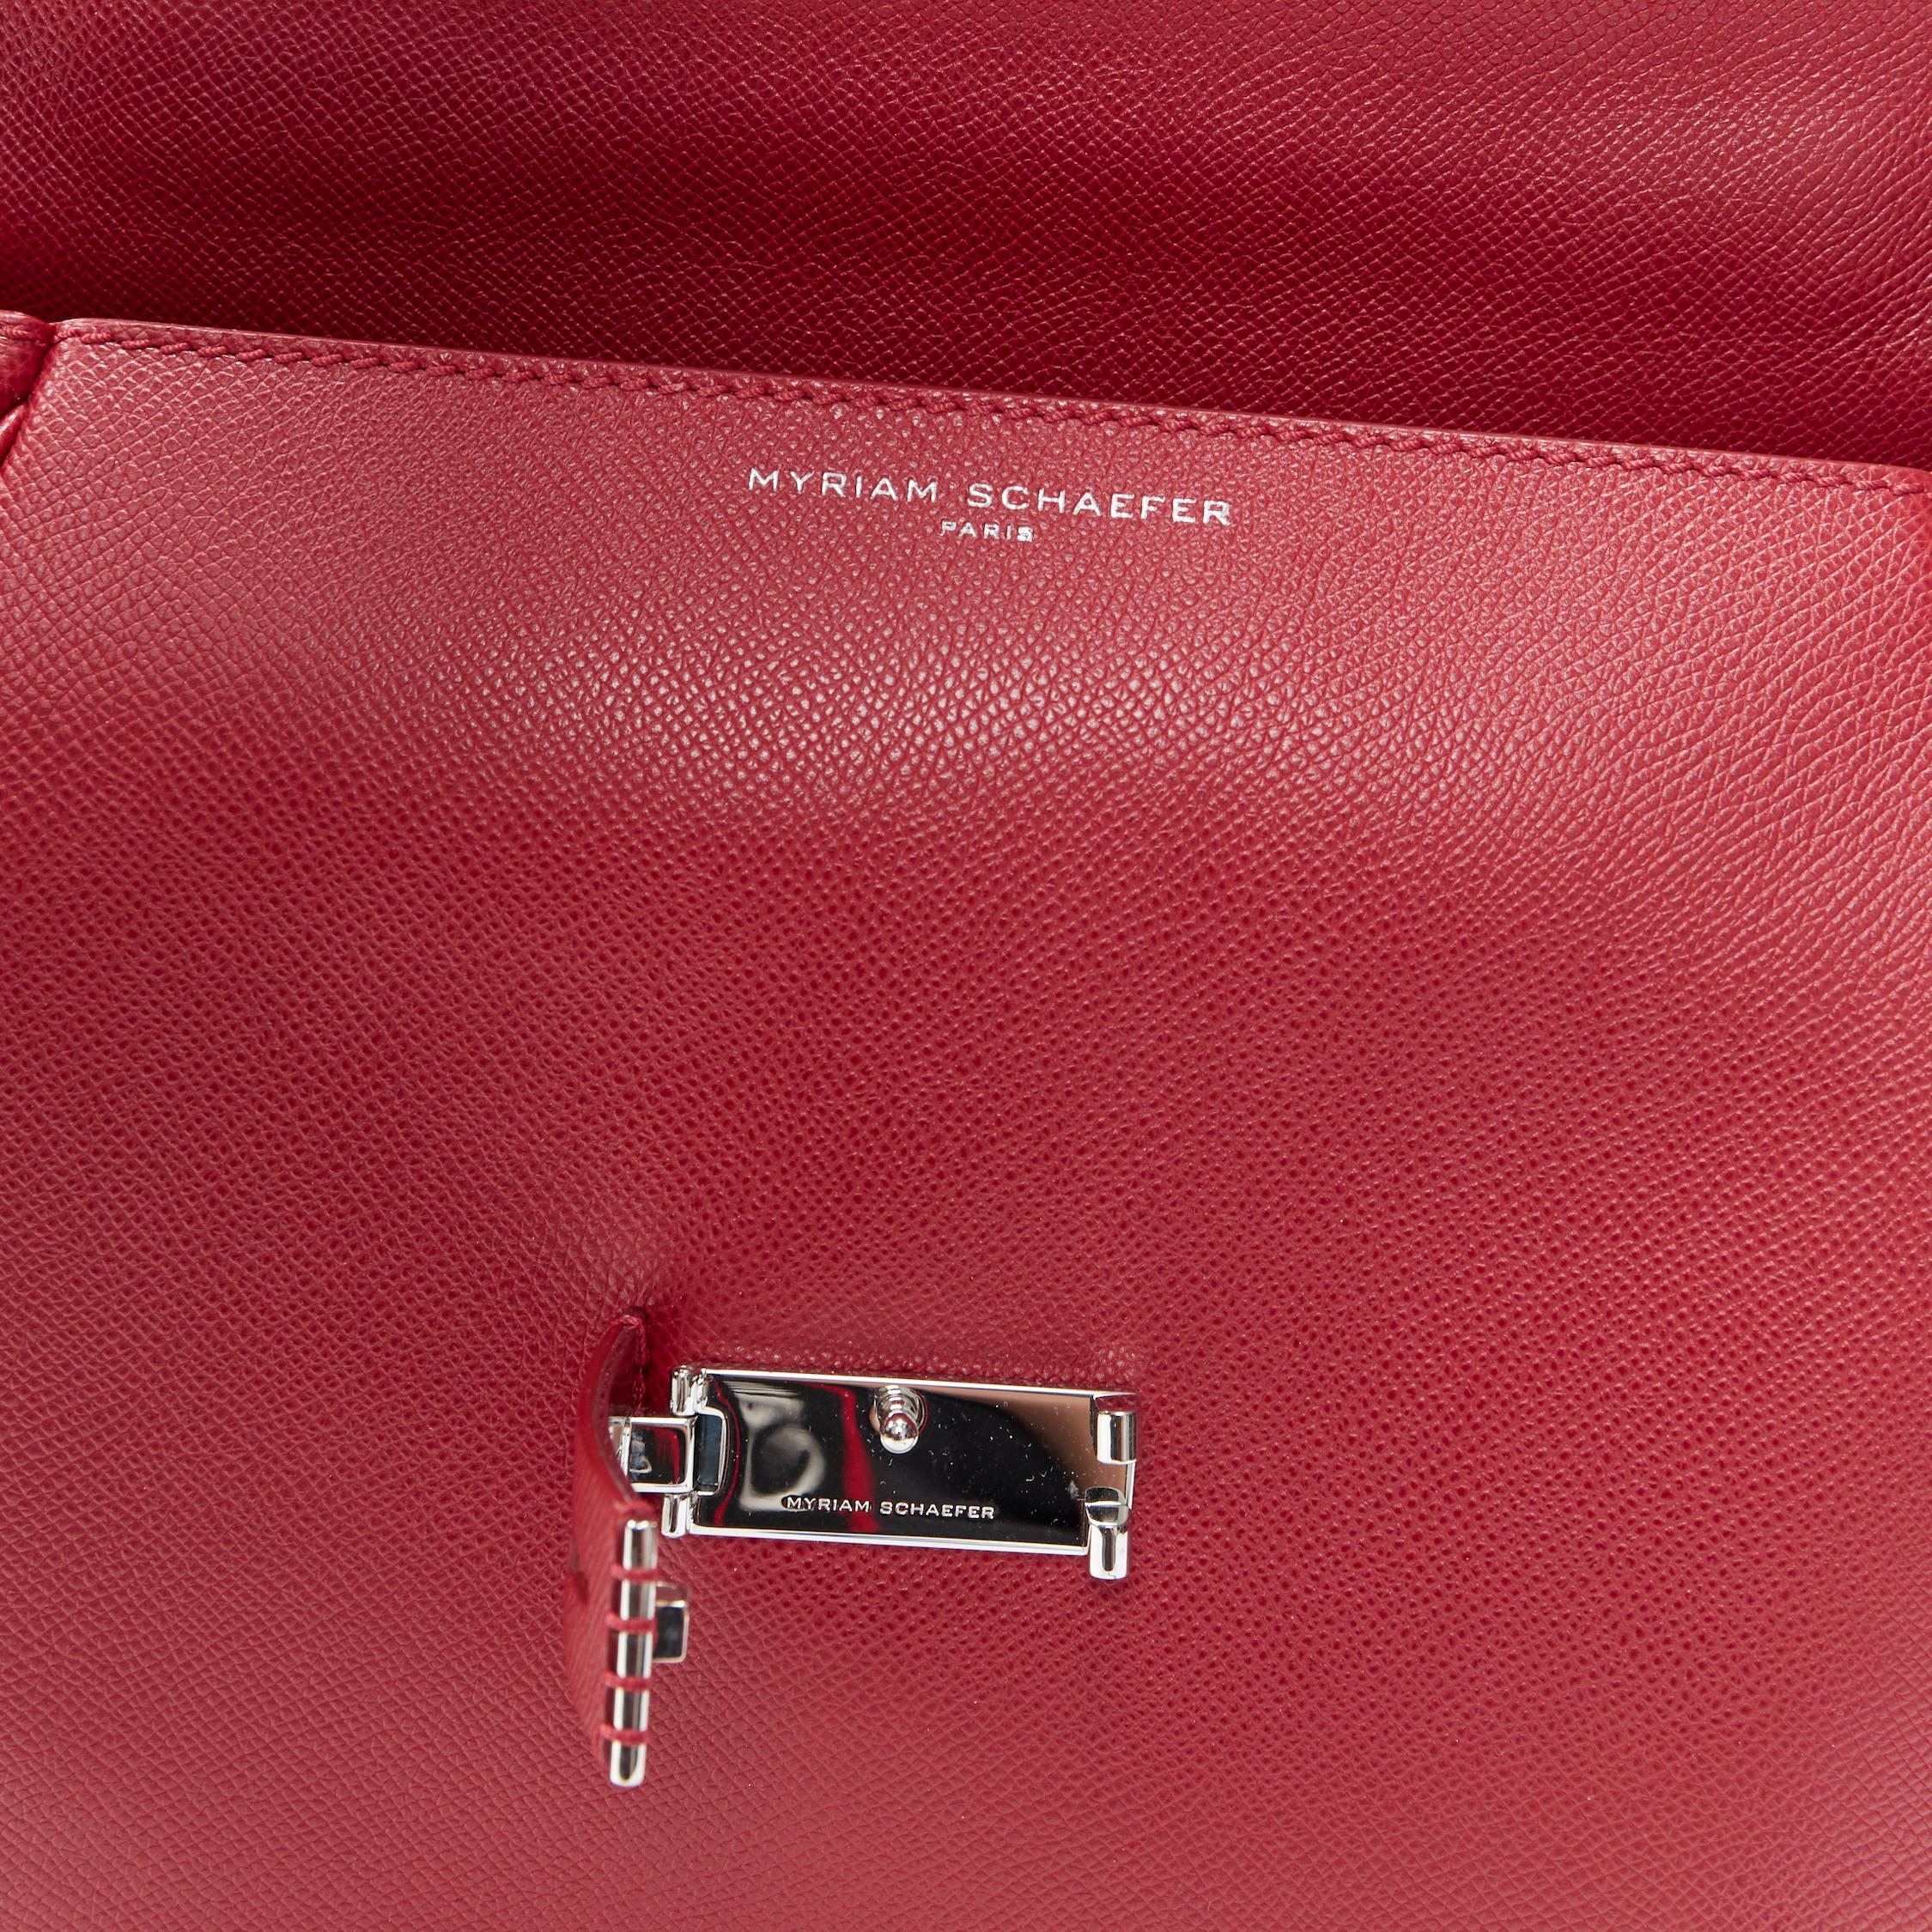 MYRIAM SCHAEFER Byron red leather cut out top handle satchel shoulder bag 4